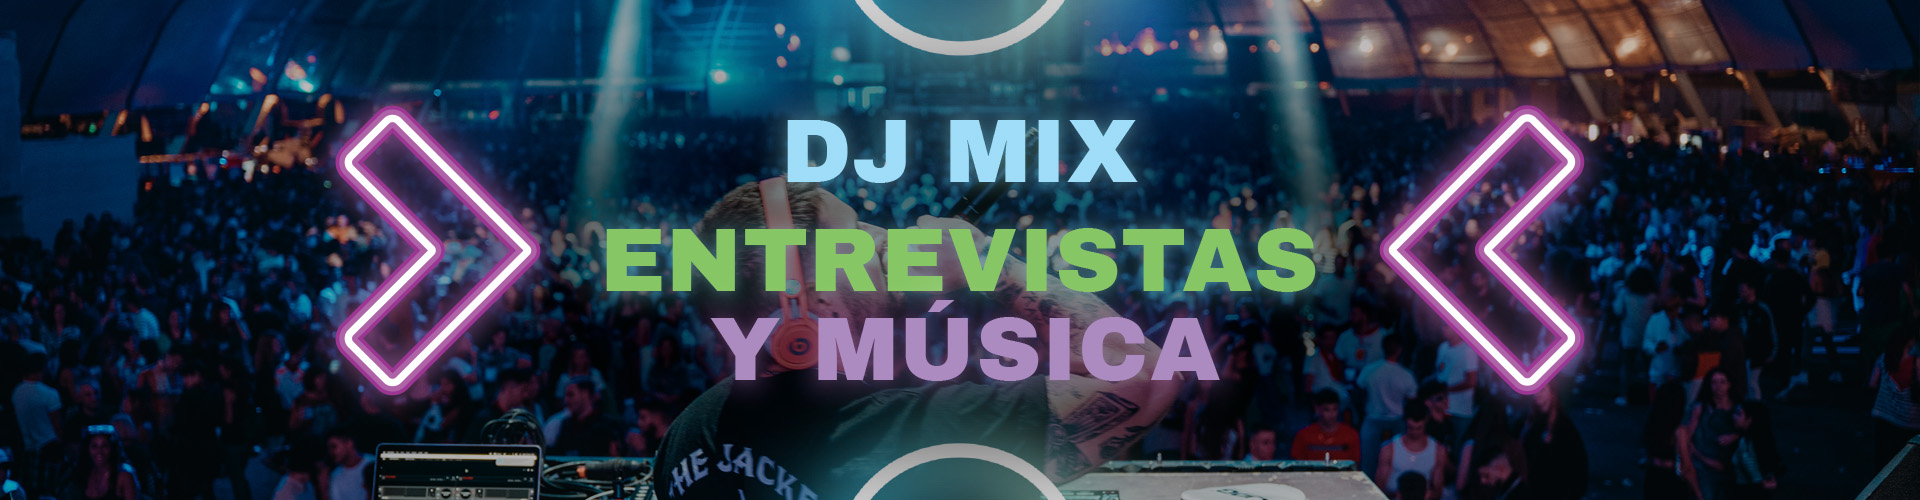 DJ MiX, ENTREVISTAS Y MÚSICA